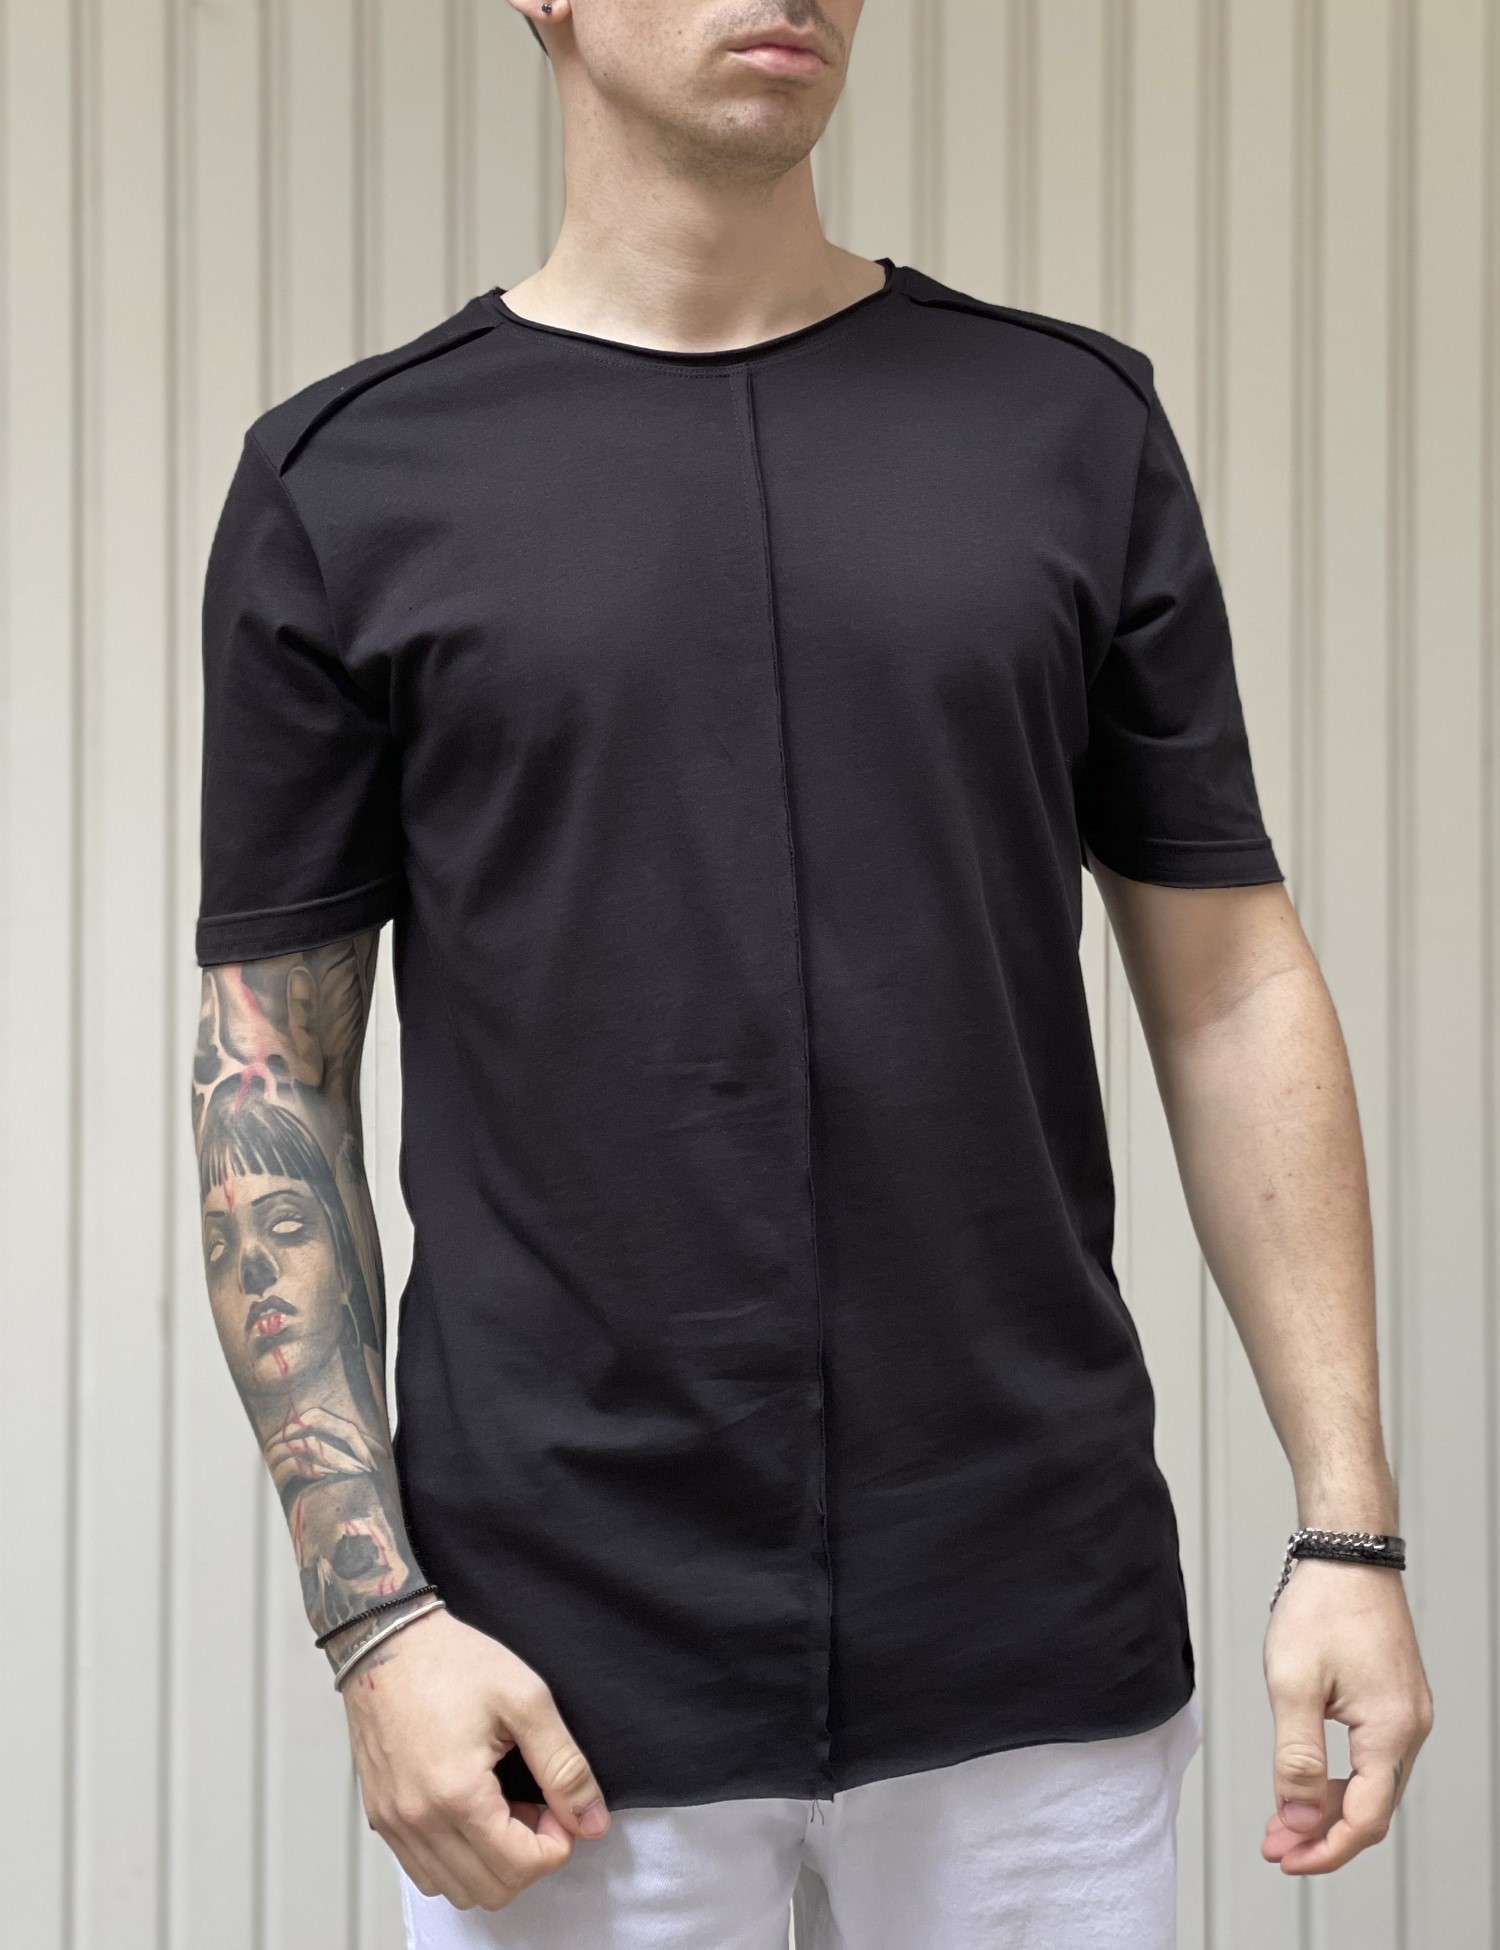 NDC NDC ανδρικο μαυρο ασυμμετρο T-shirt με ραφη 232917